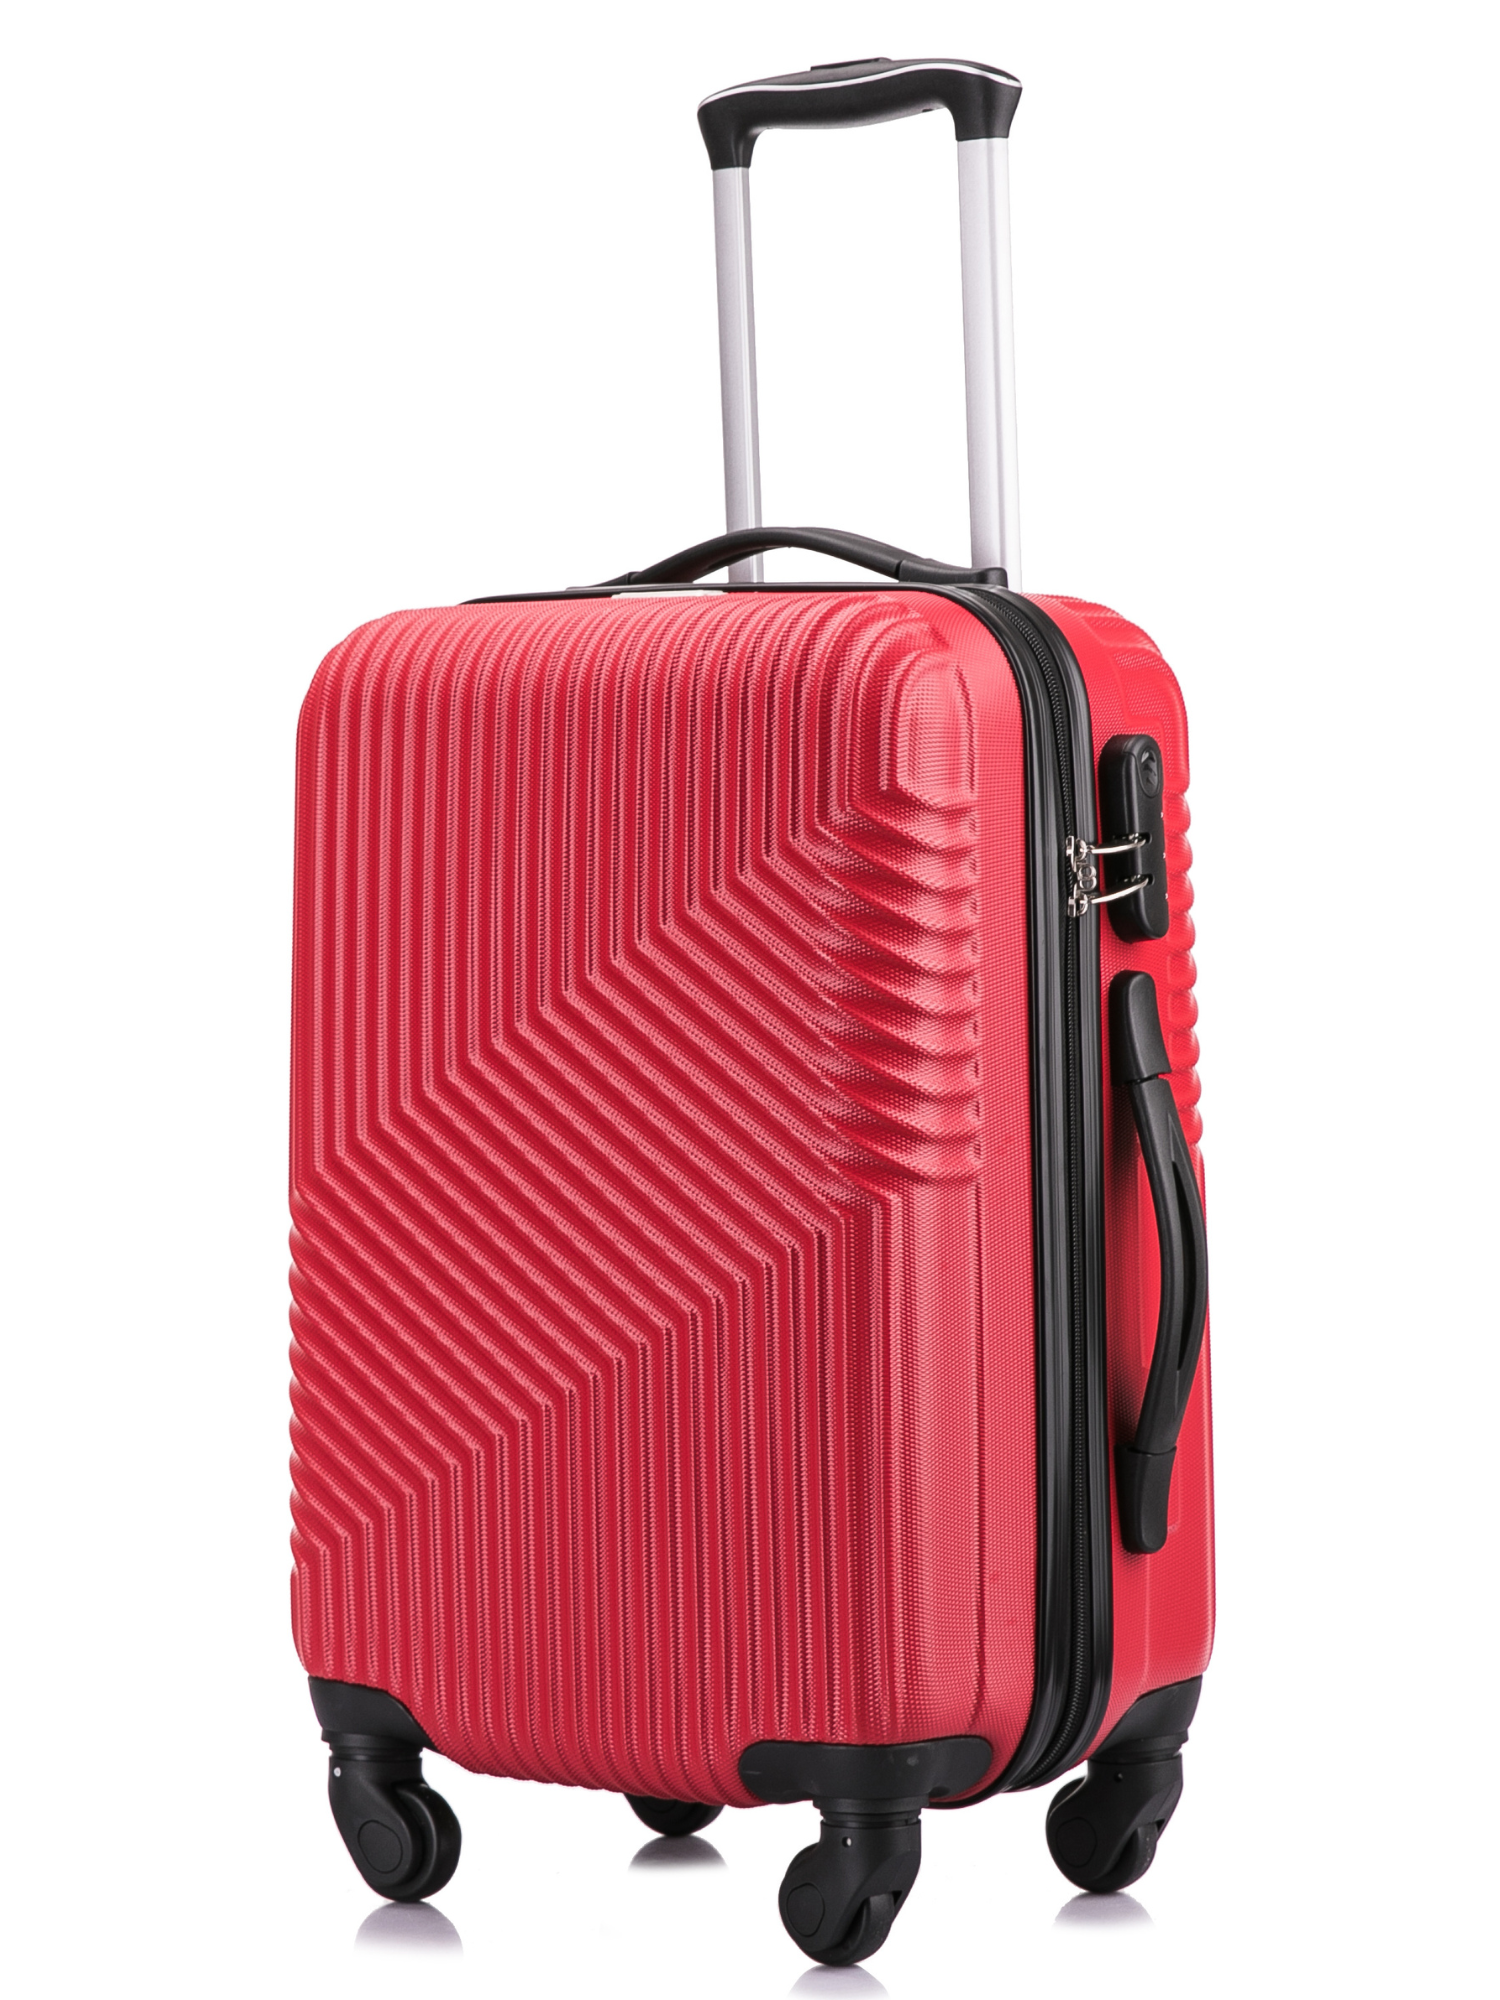 55x35x20 4 Wheel Super Lightweight Cabin Luggage Suitcase